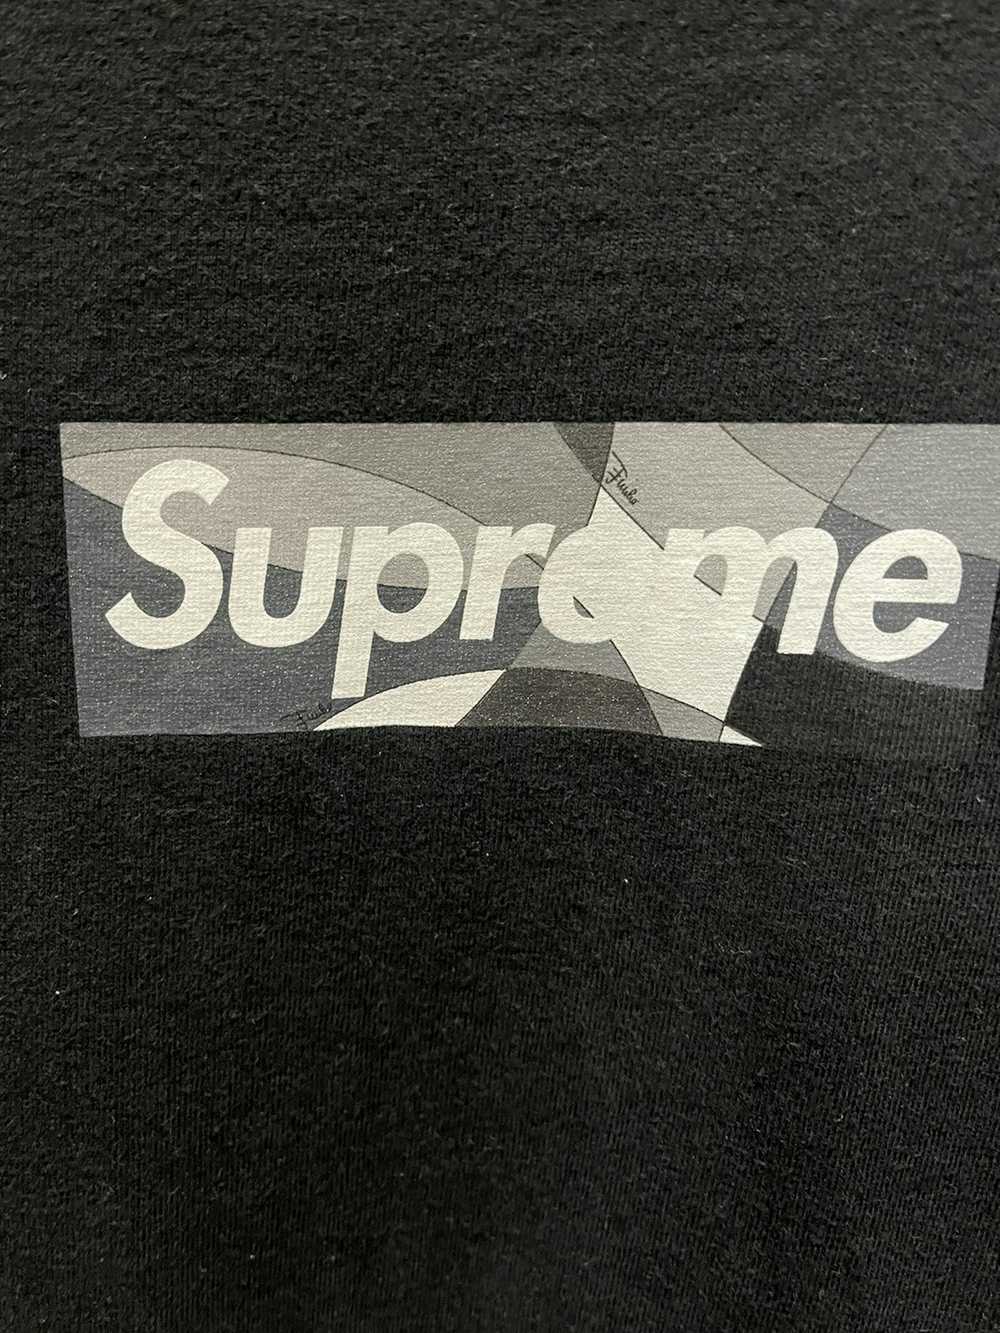 Supreme Emilio Pucci Black on Black Supreme Box L… - image 2